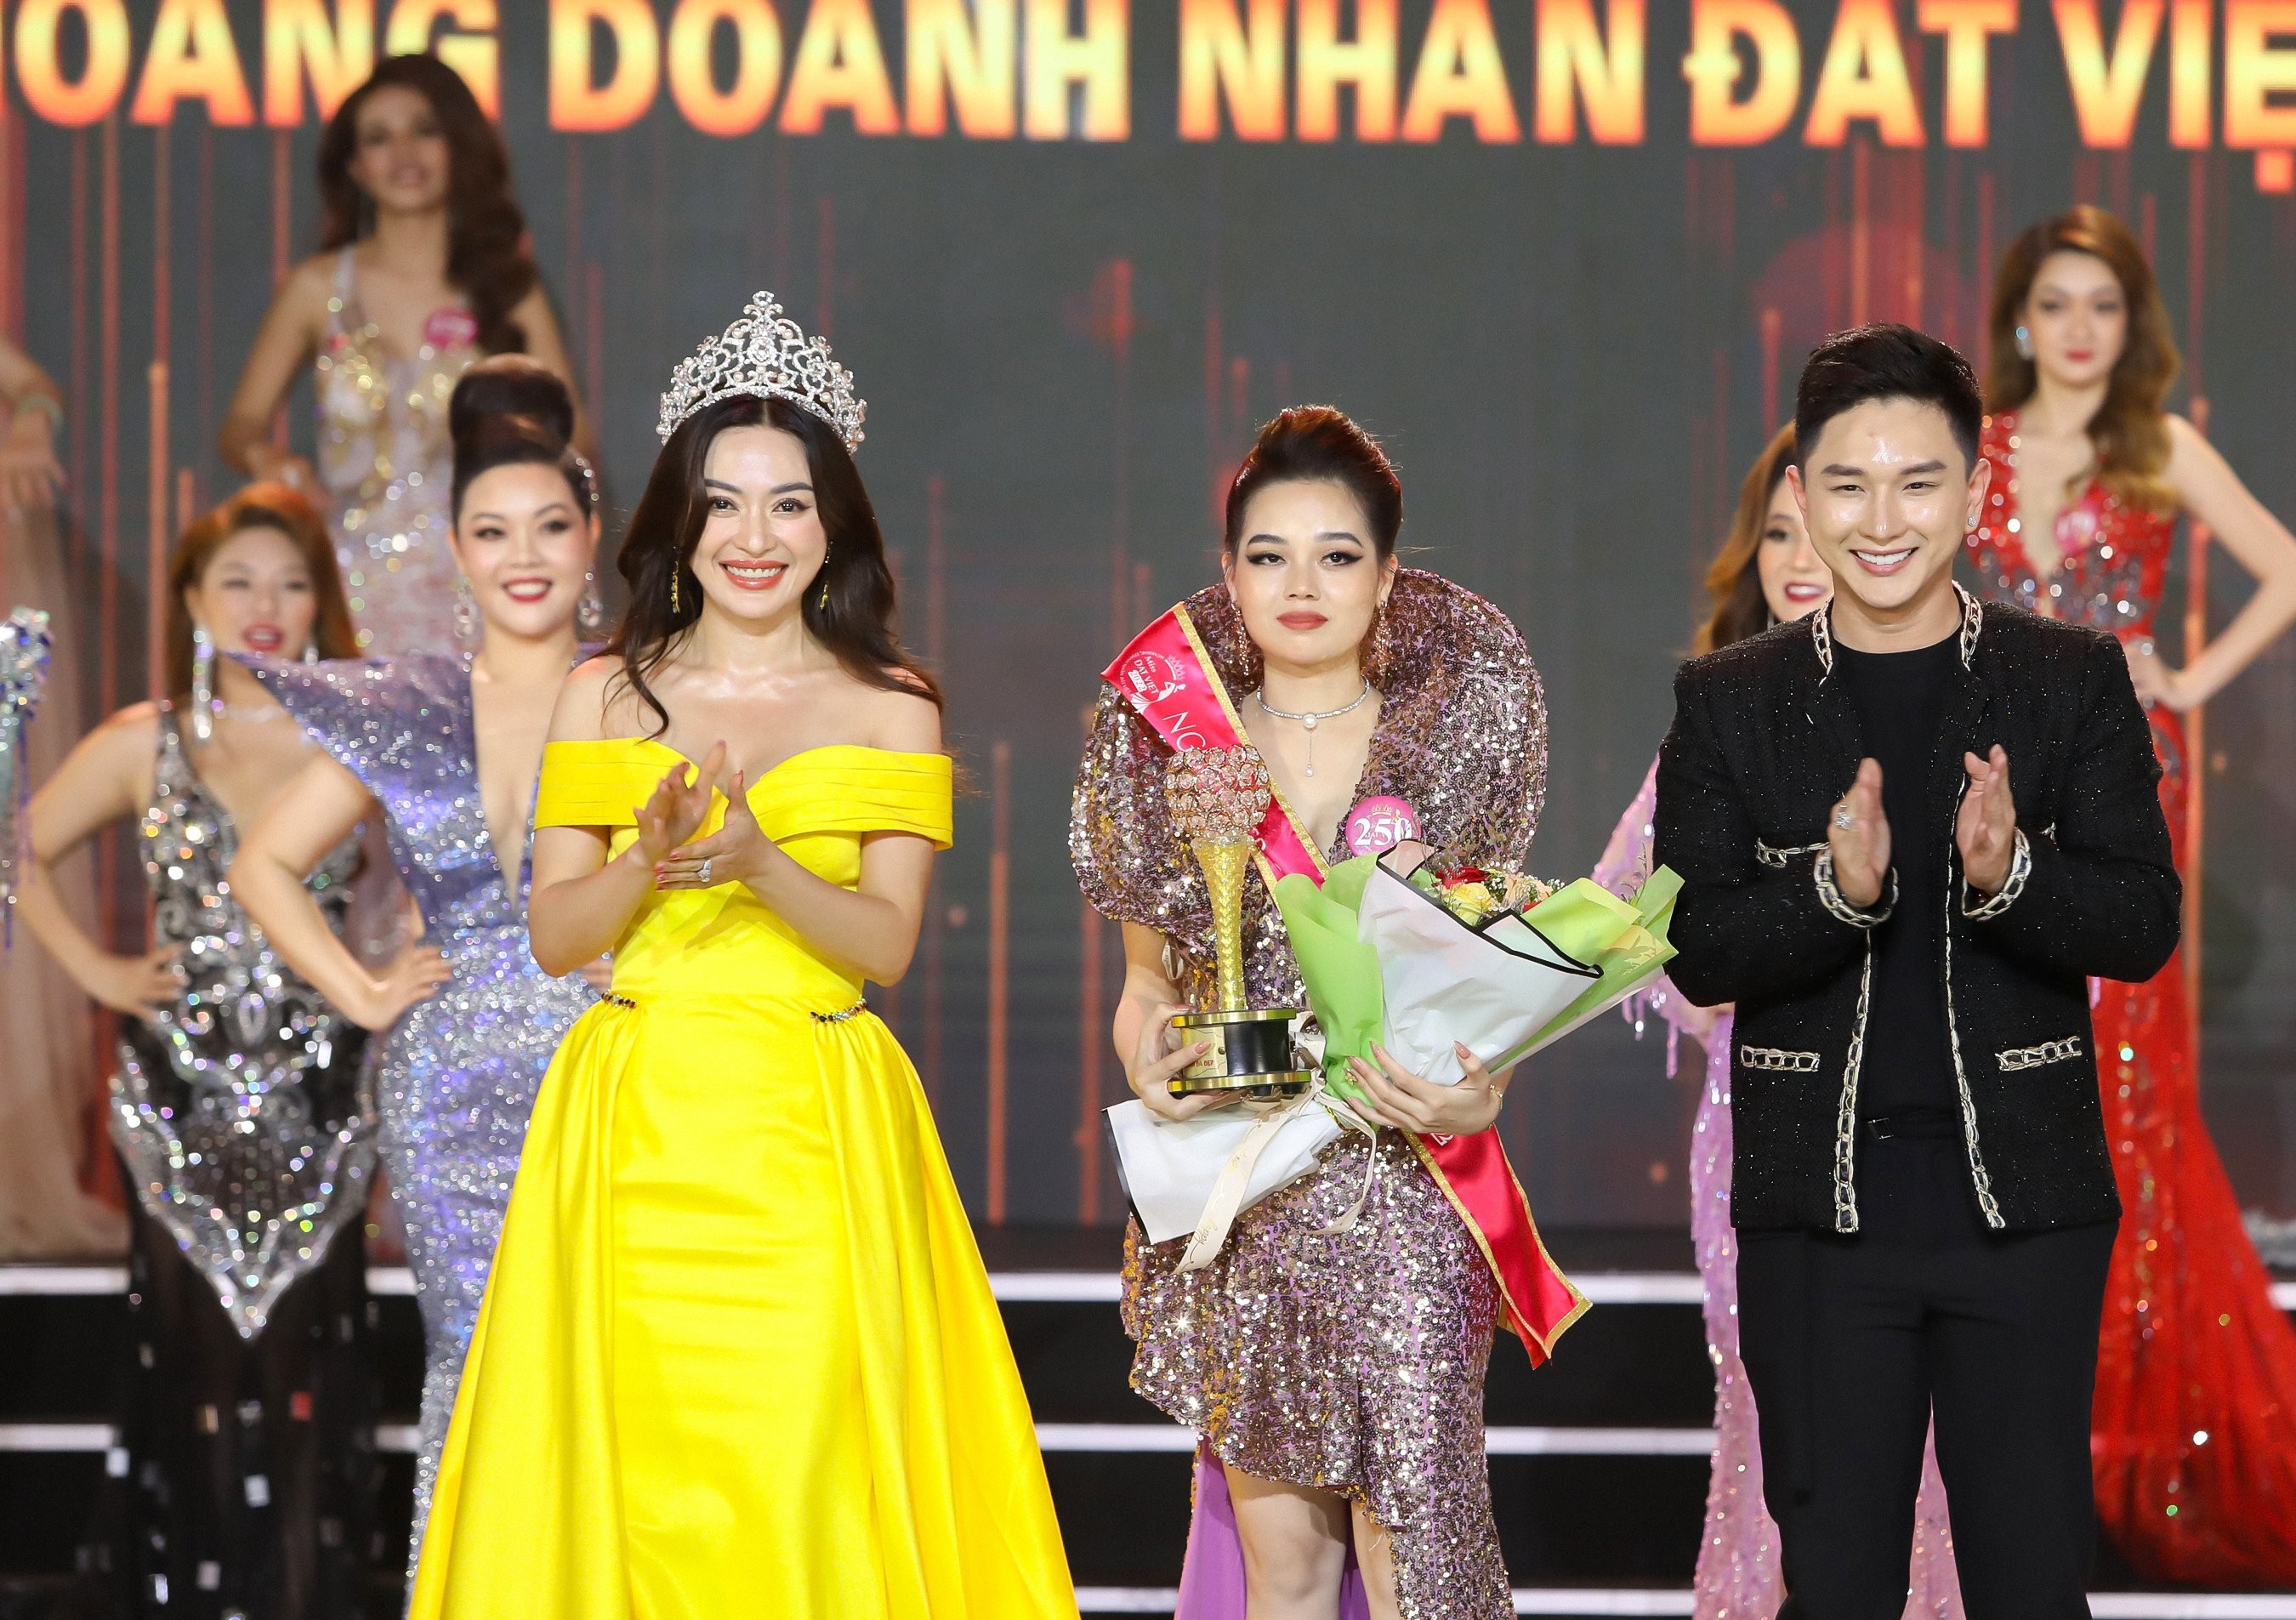 “Người đẹp có làn da đẹp" - Đỗ Thị Quỳnh Anh và hành trình khẳng định bản thân tại cuộc thi “Nữ hoàng Doanh nhân đất Việt 2022”